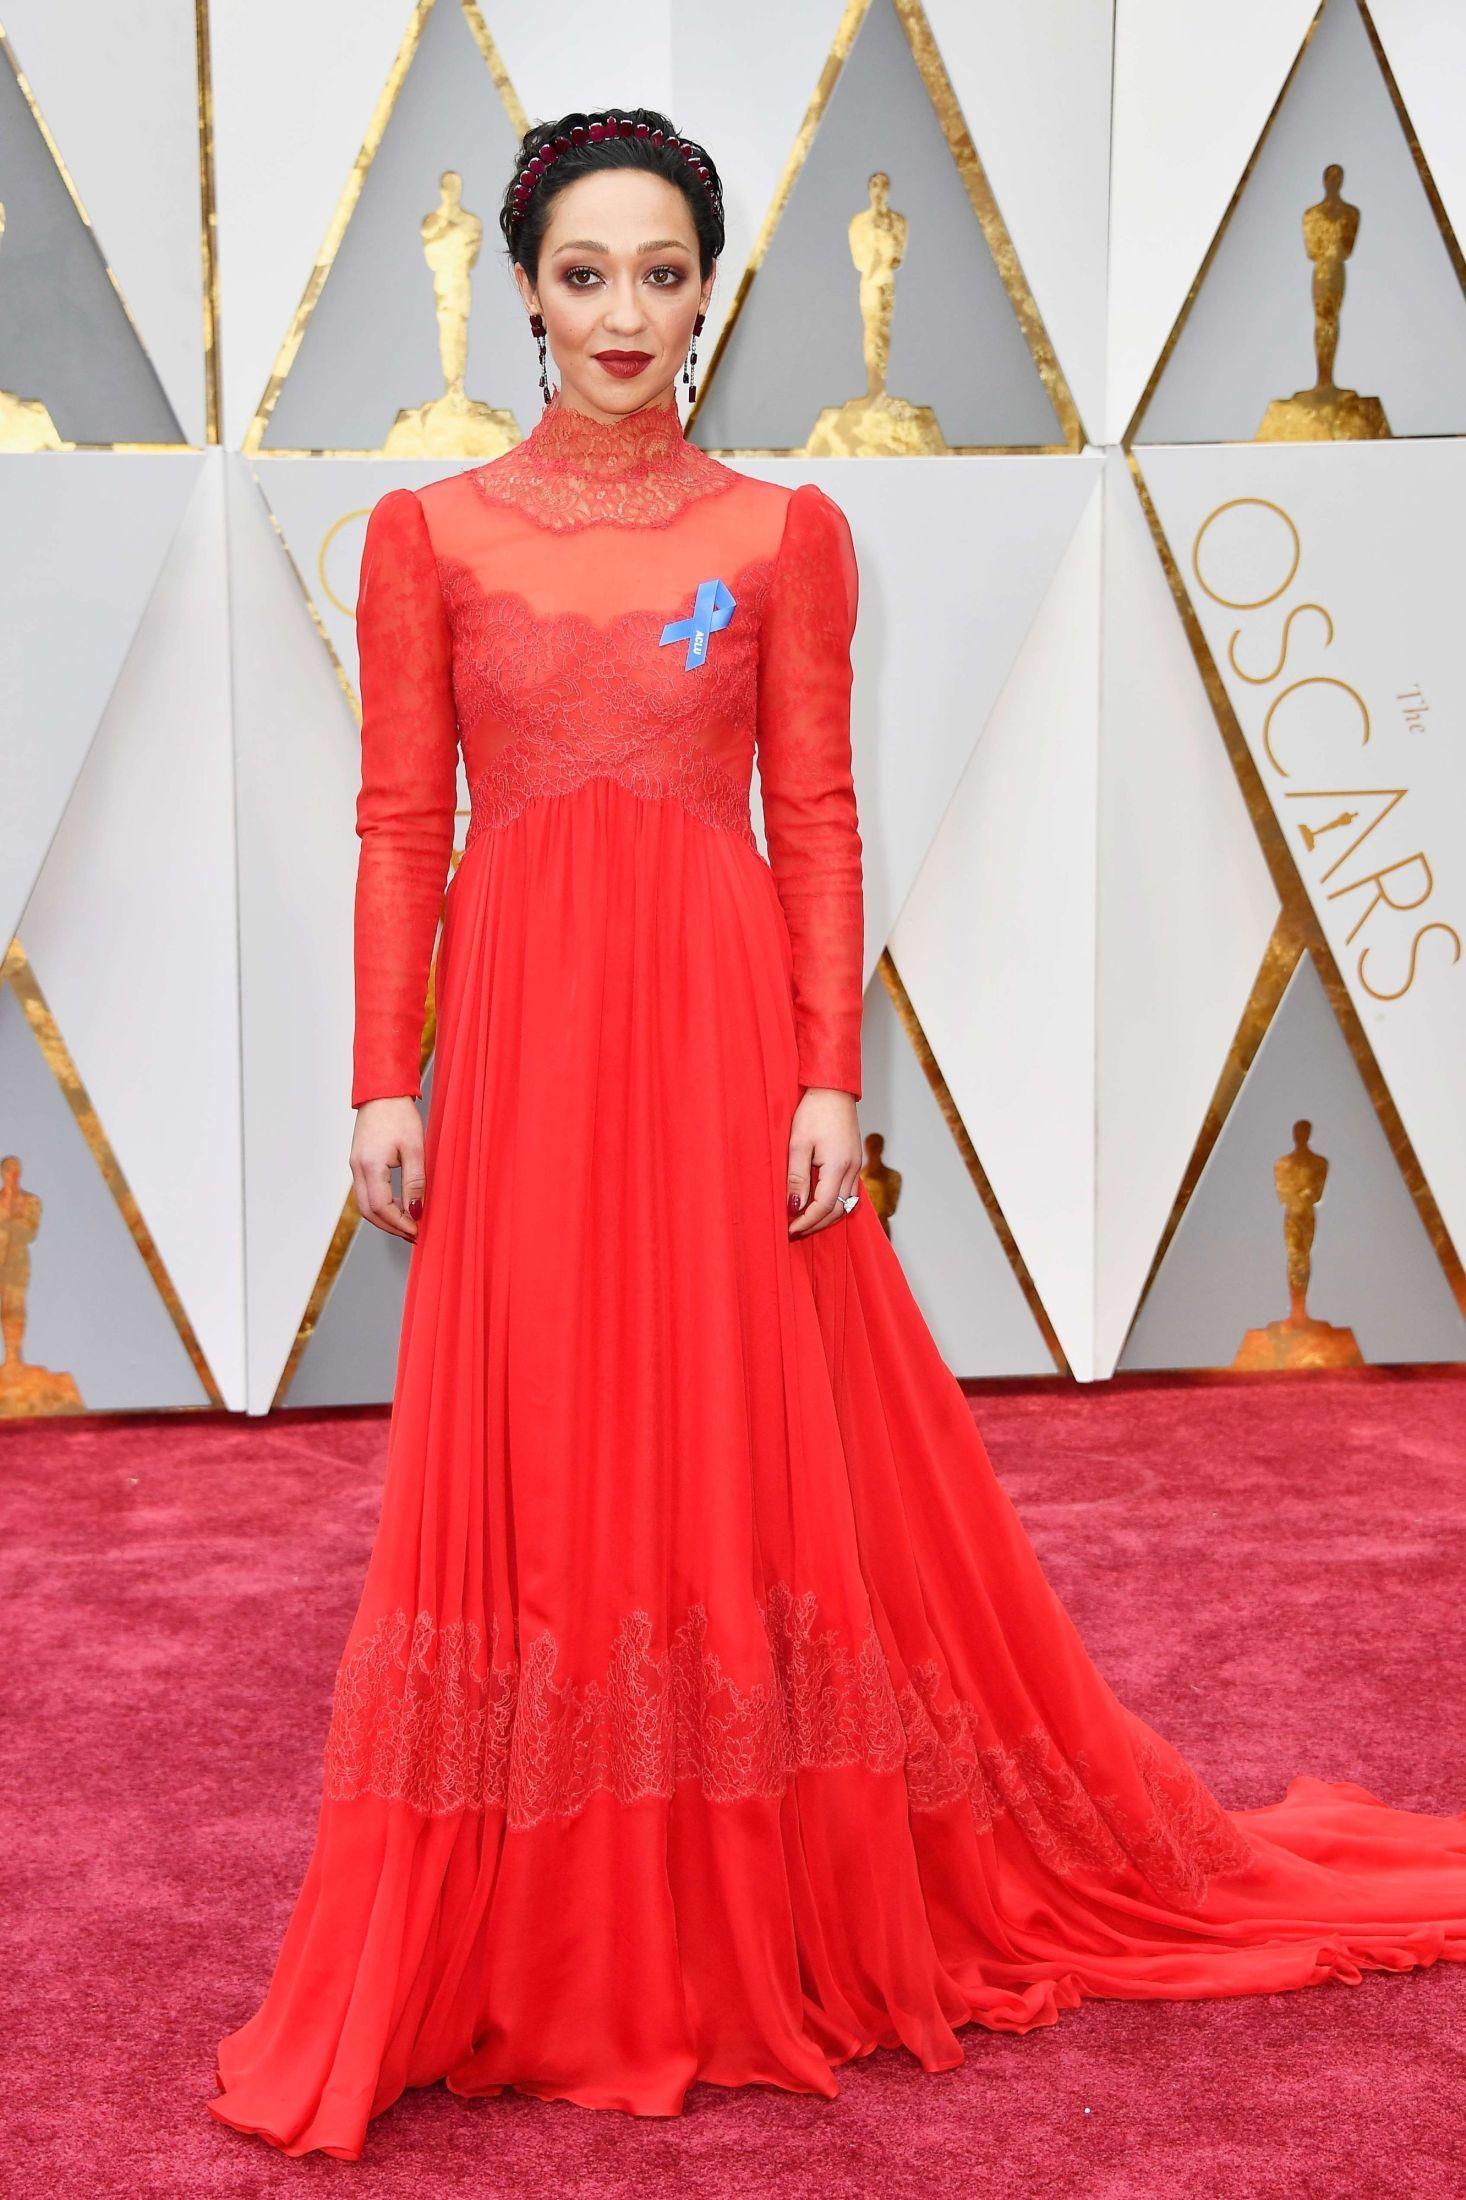 VAKKER: Iført en drøm av en kjole i ekte Valentino-rødt strålte Ruth Negga på den røde løperen. Foto: NTB scanpix